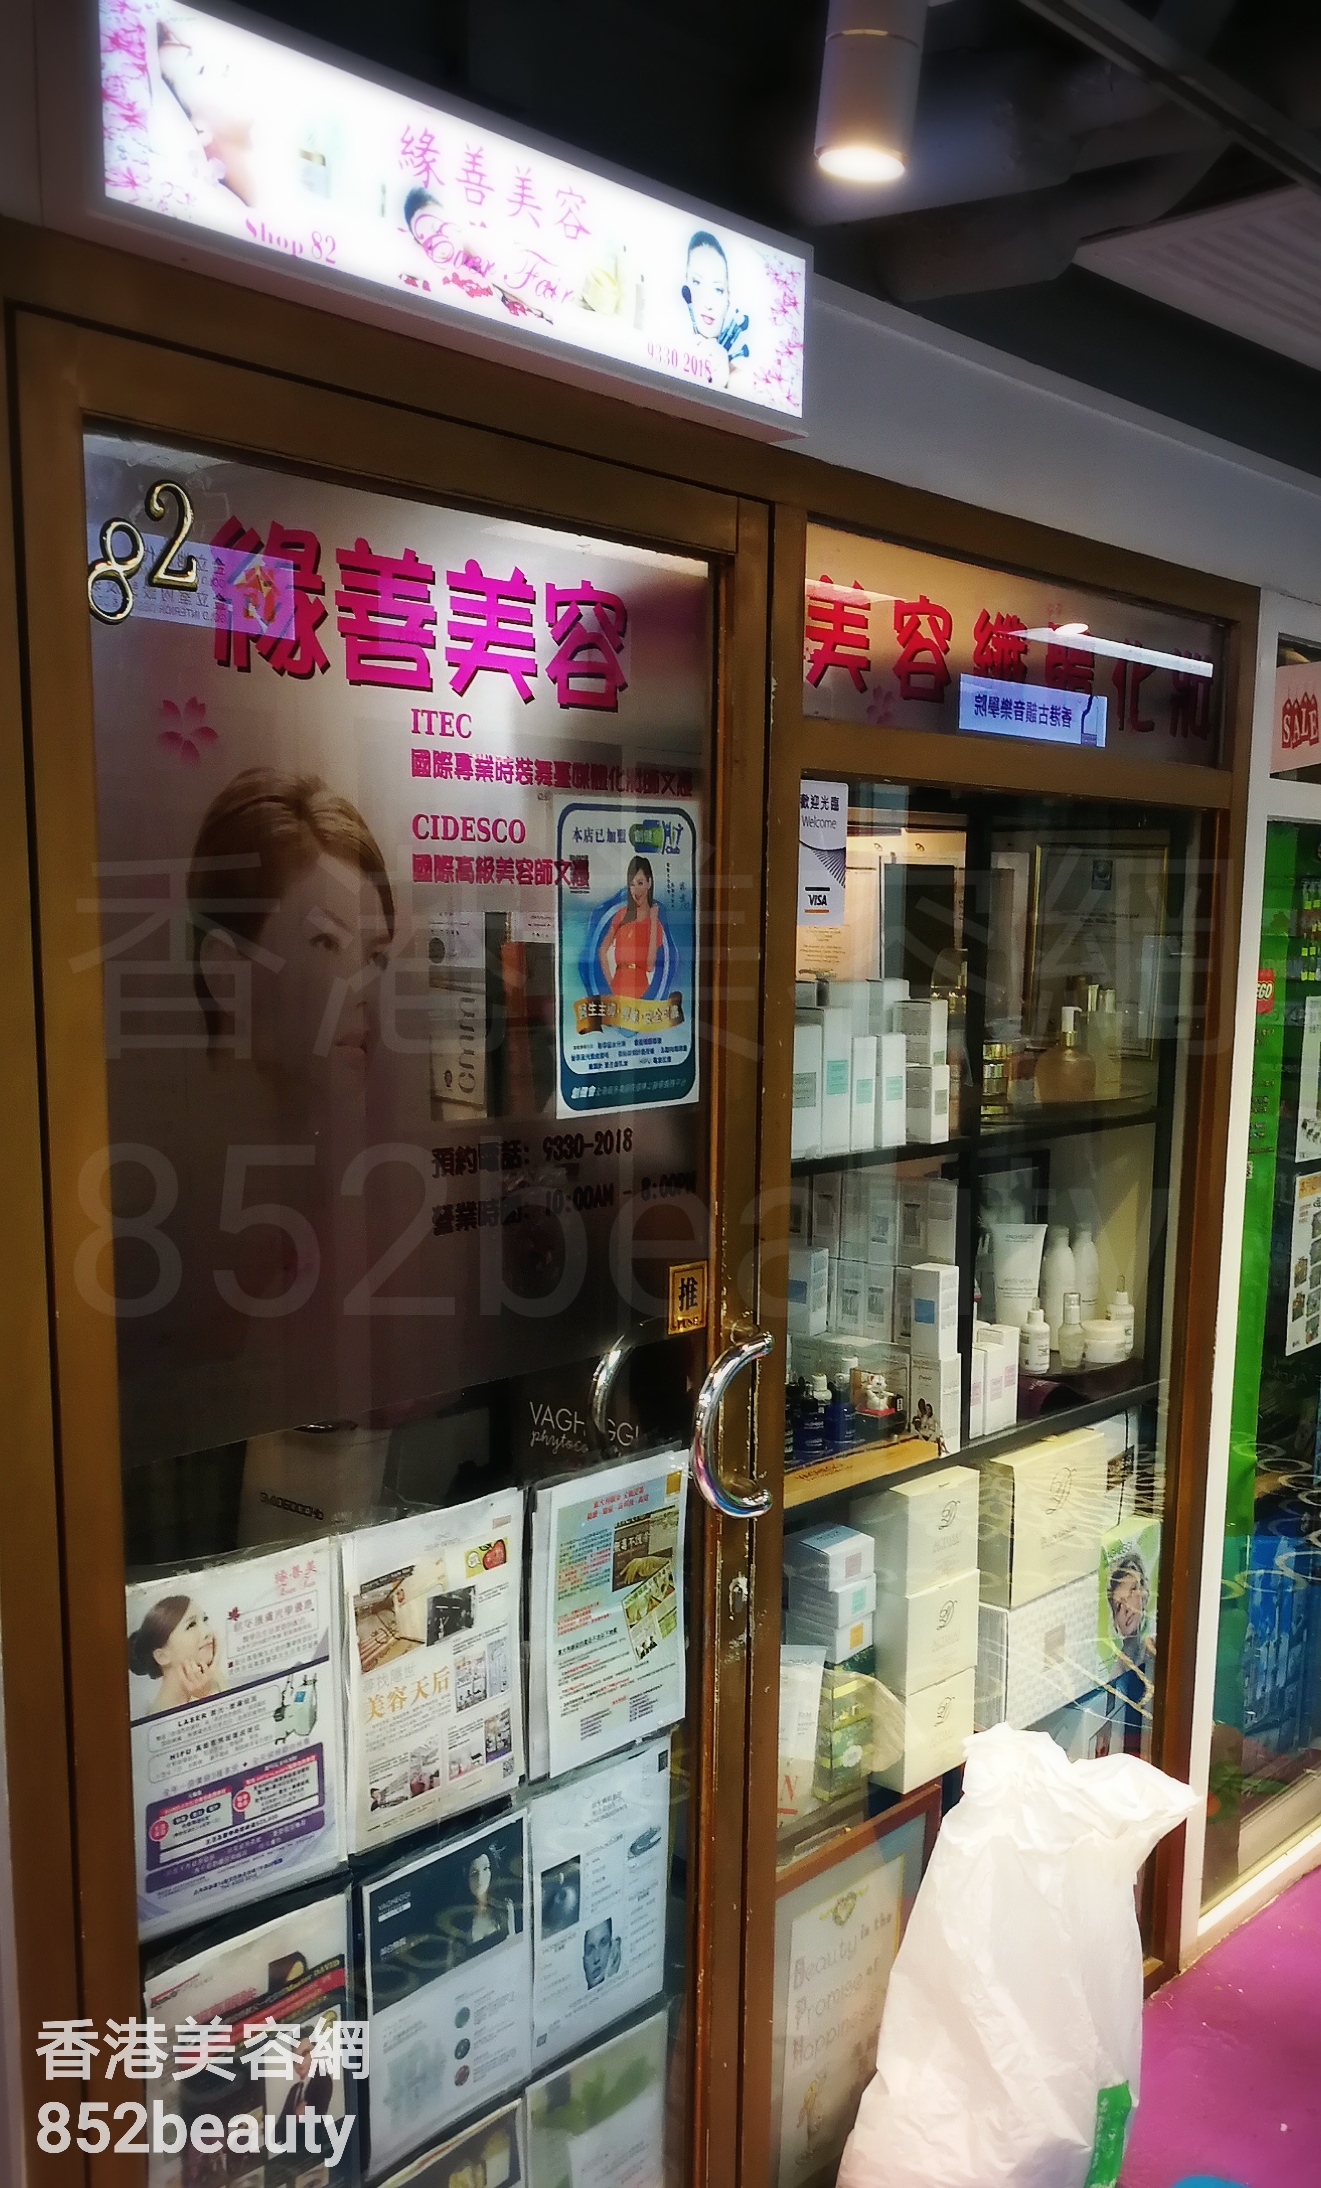 香港美容網 Hong Kong Beauty Salon 美容院 / 美容師: 緣善美容